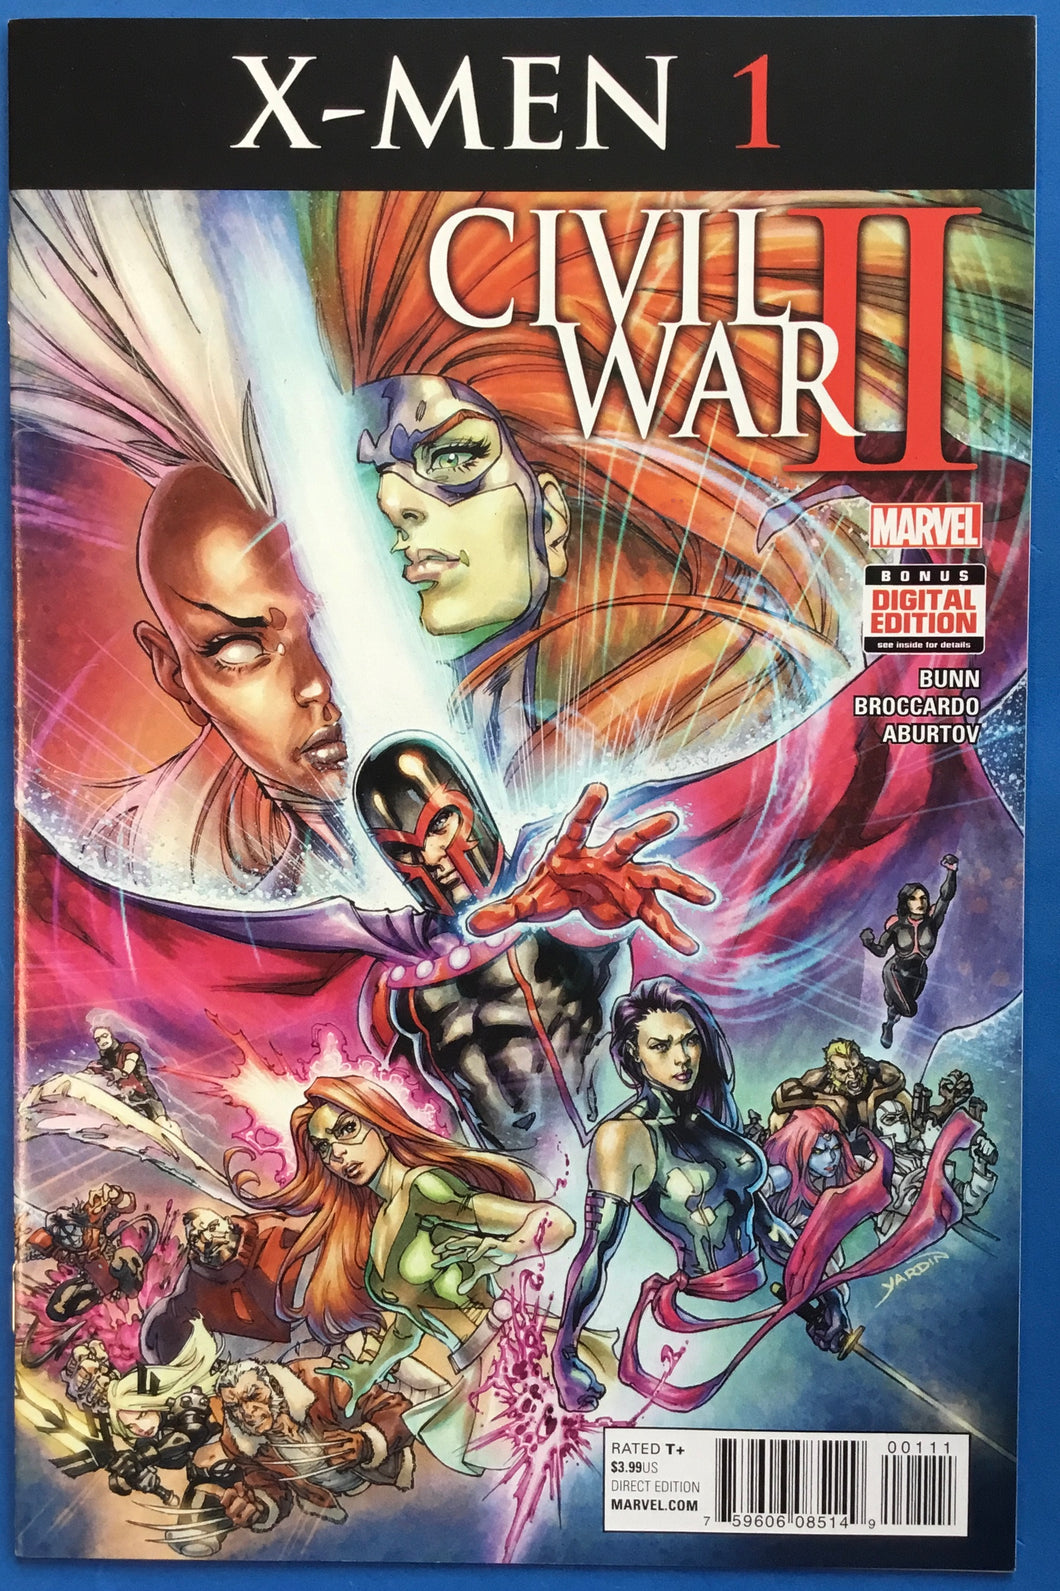 Civil War II: X-Men No. #1 2016 Marvel Comics